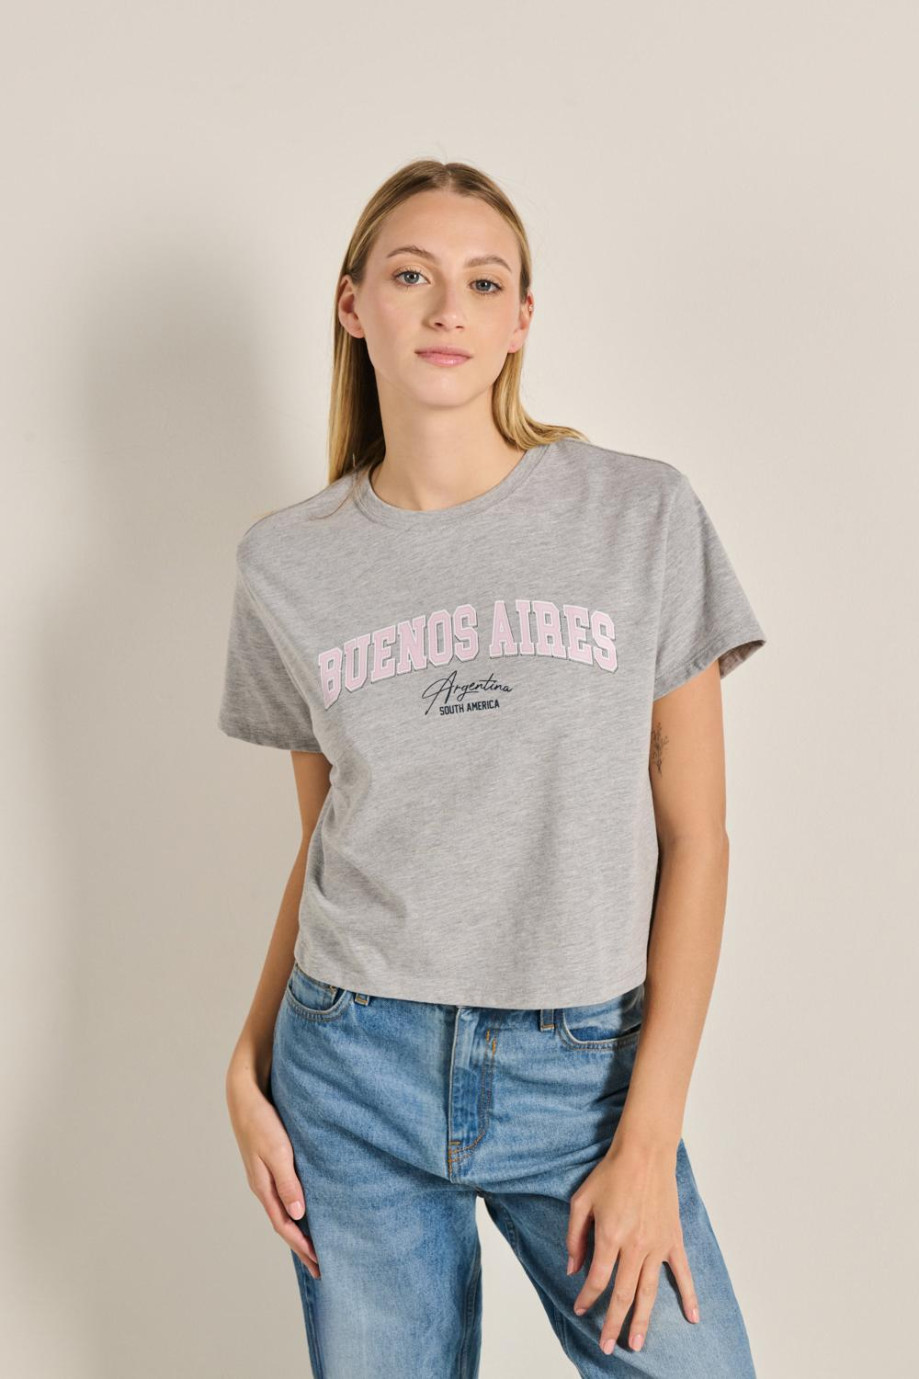 Camiseta unicolor crop top con diseño college de Buenos Aires